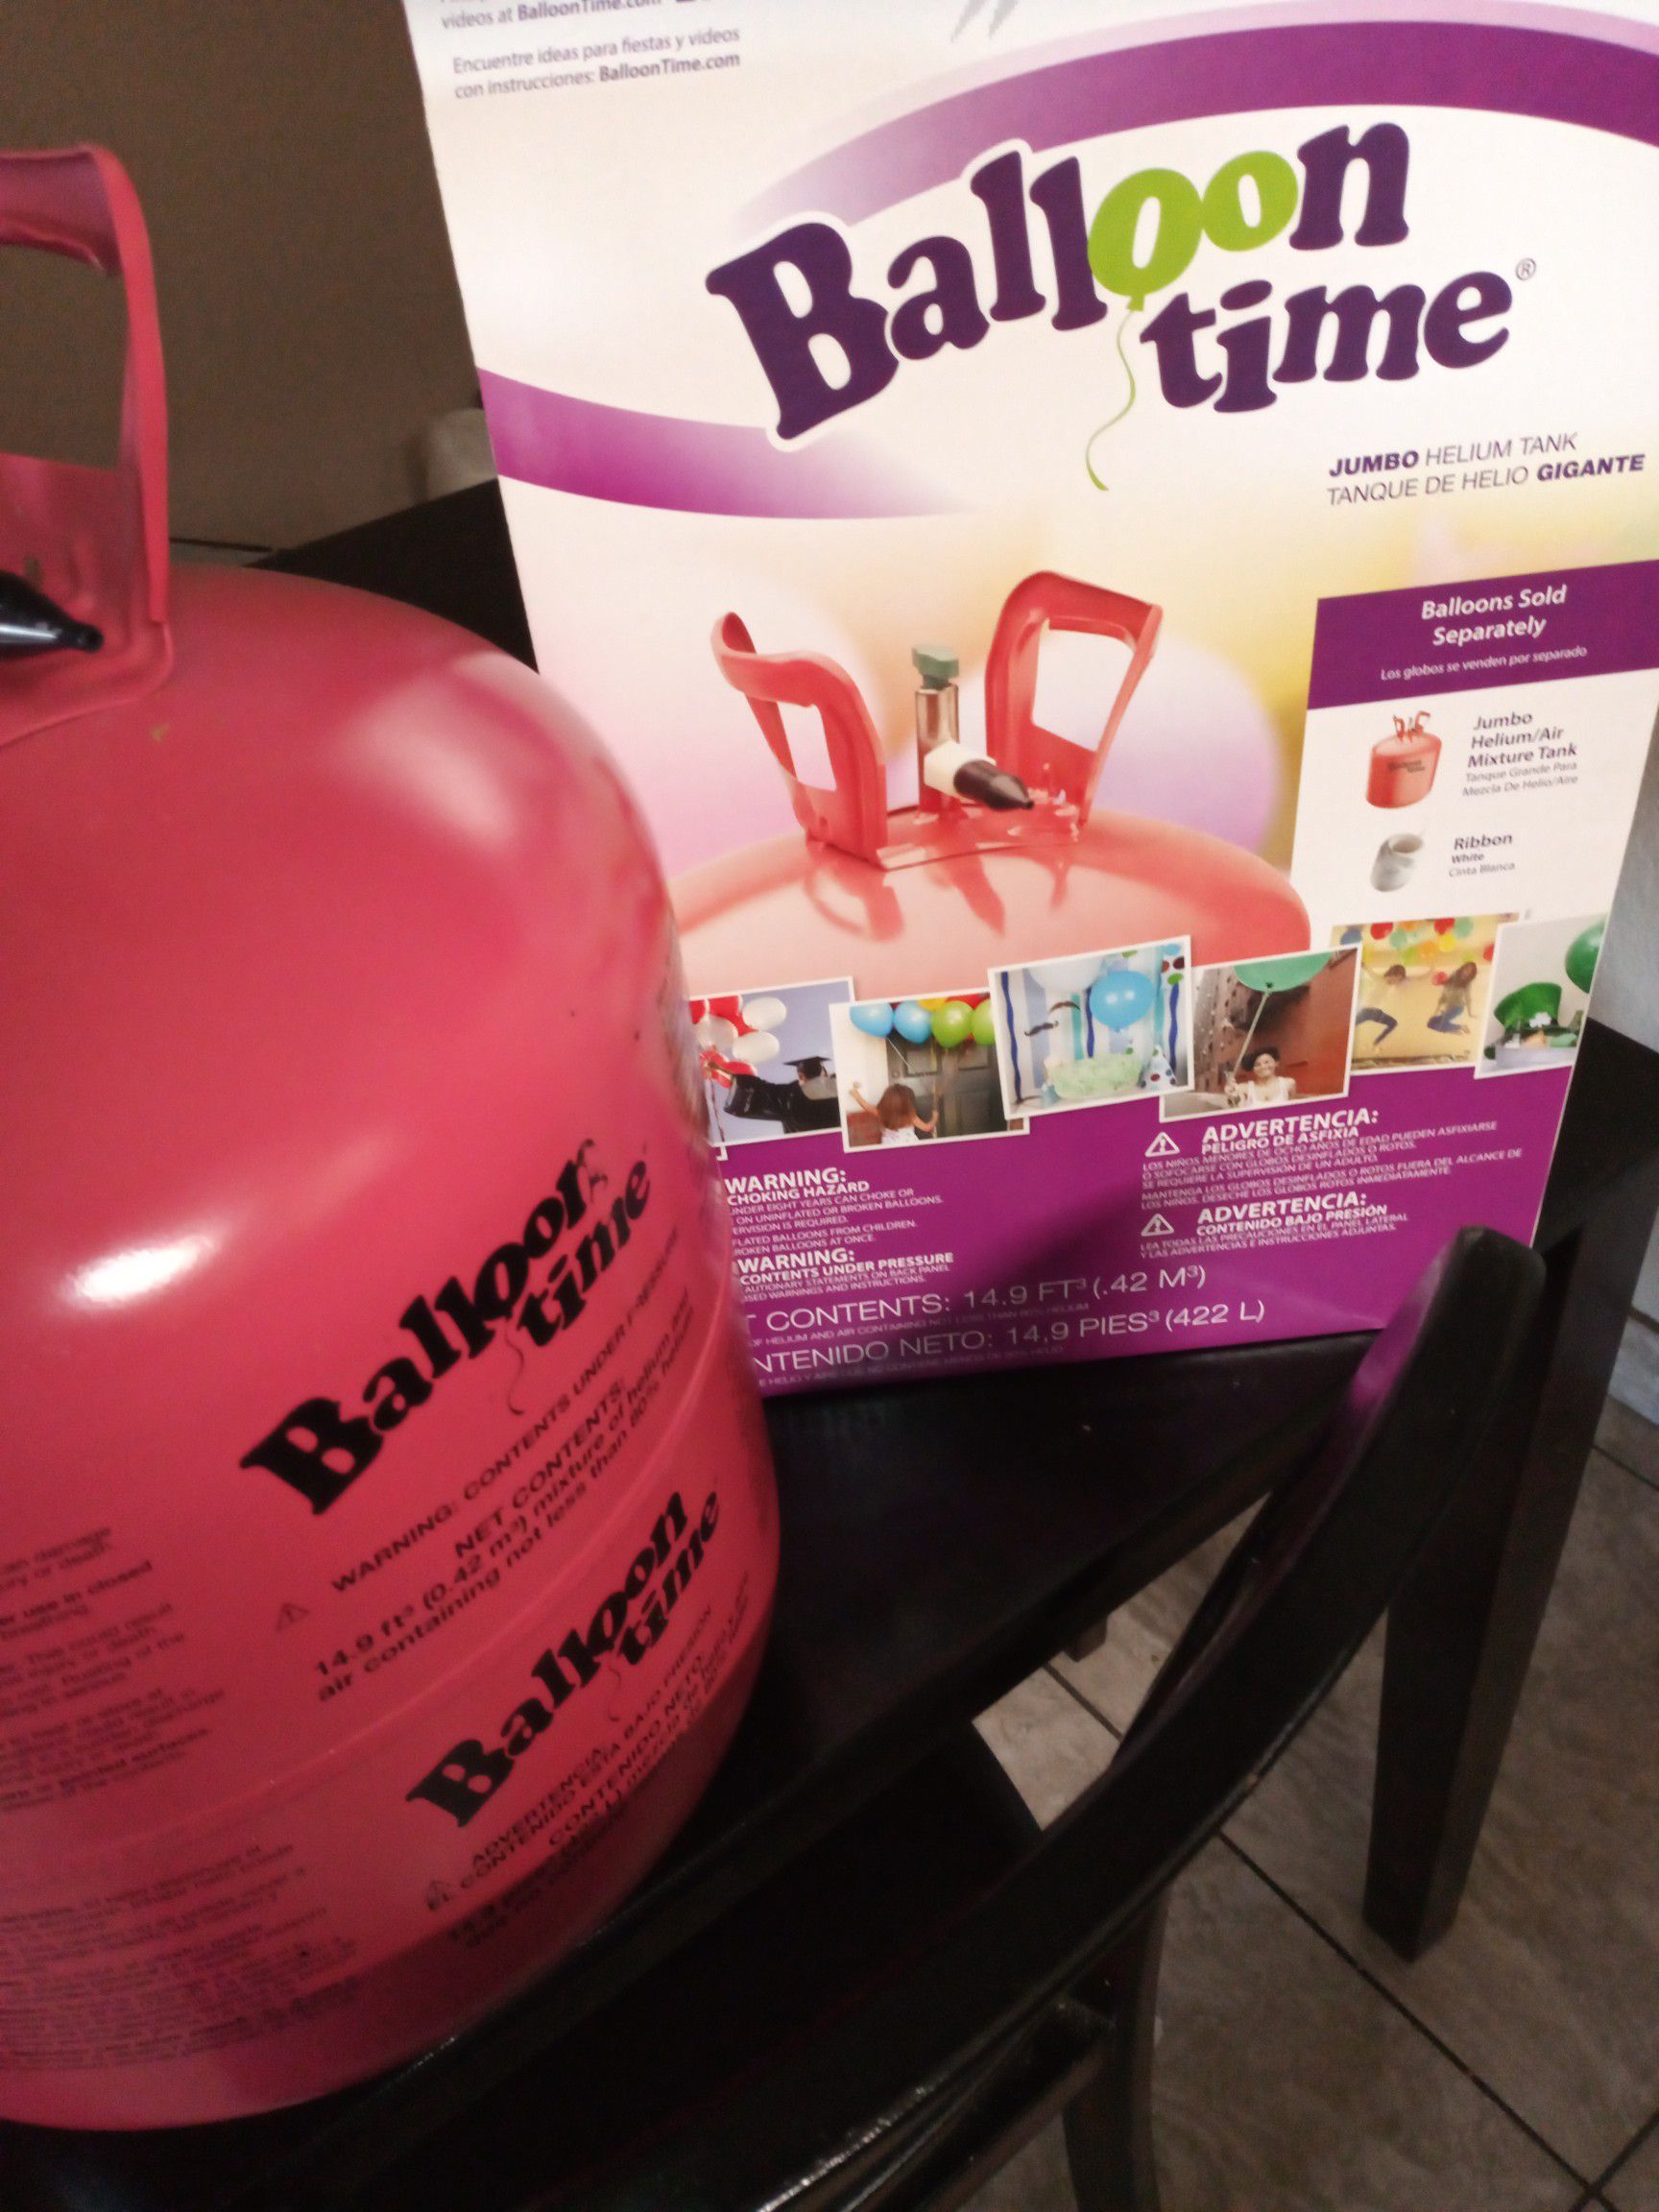 Ballon Time tank